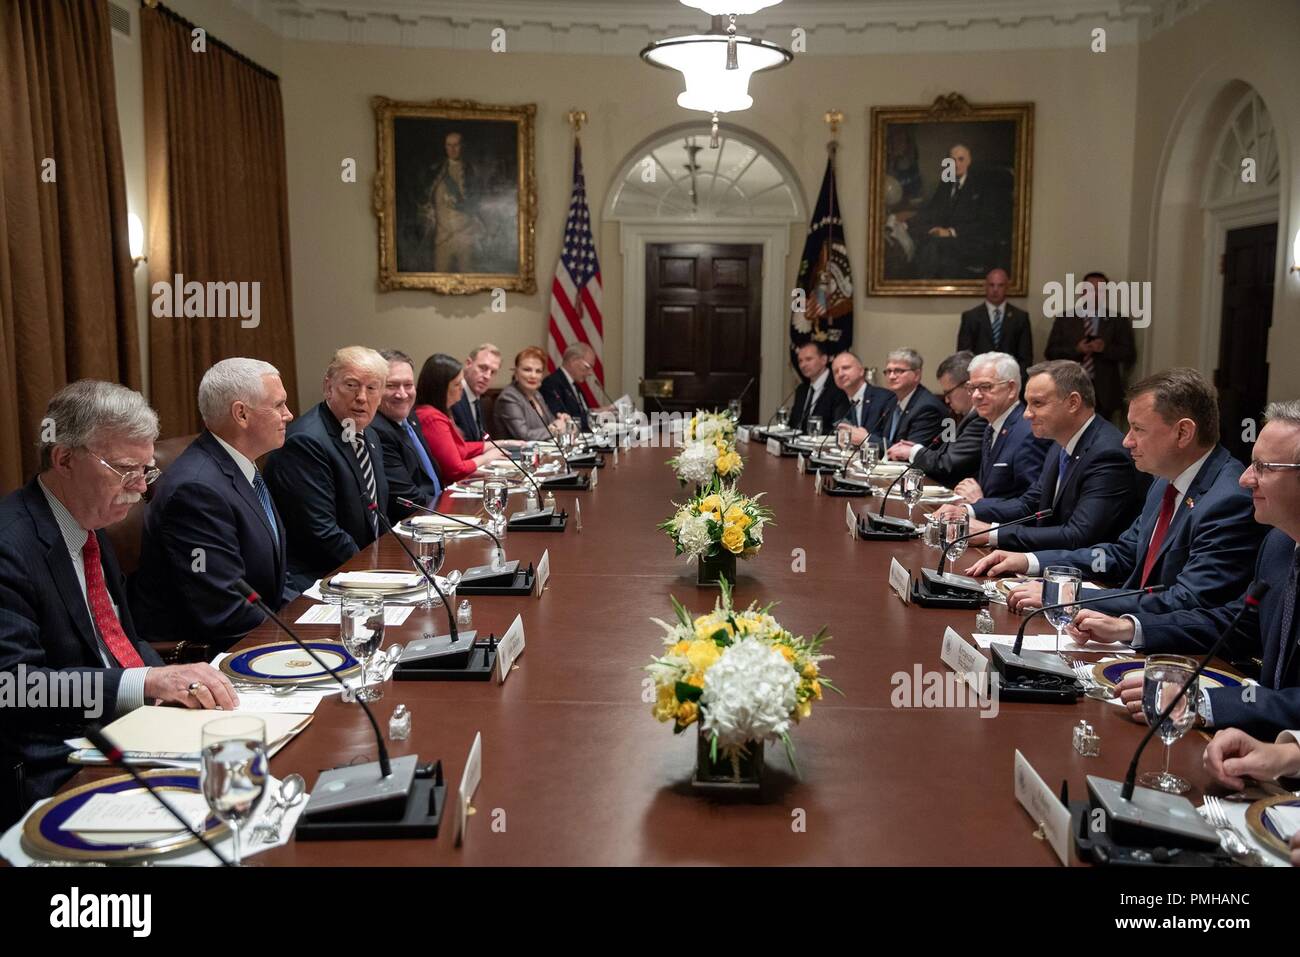 Président américain Donald Trump, droit, accueille les discussions au niveau de délégation avec le président polonais Andrzej Duda, droite, dans la salle du Cabinet de la Maison Blanche le 18 septembre 2018 à Washington, DC. Banque D'Images